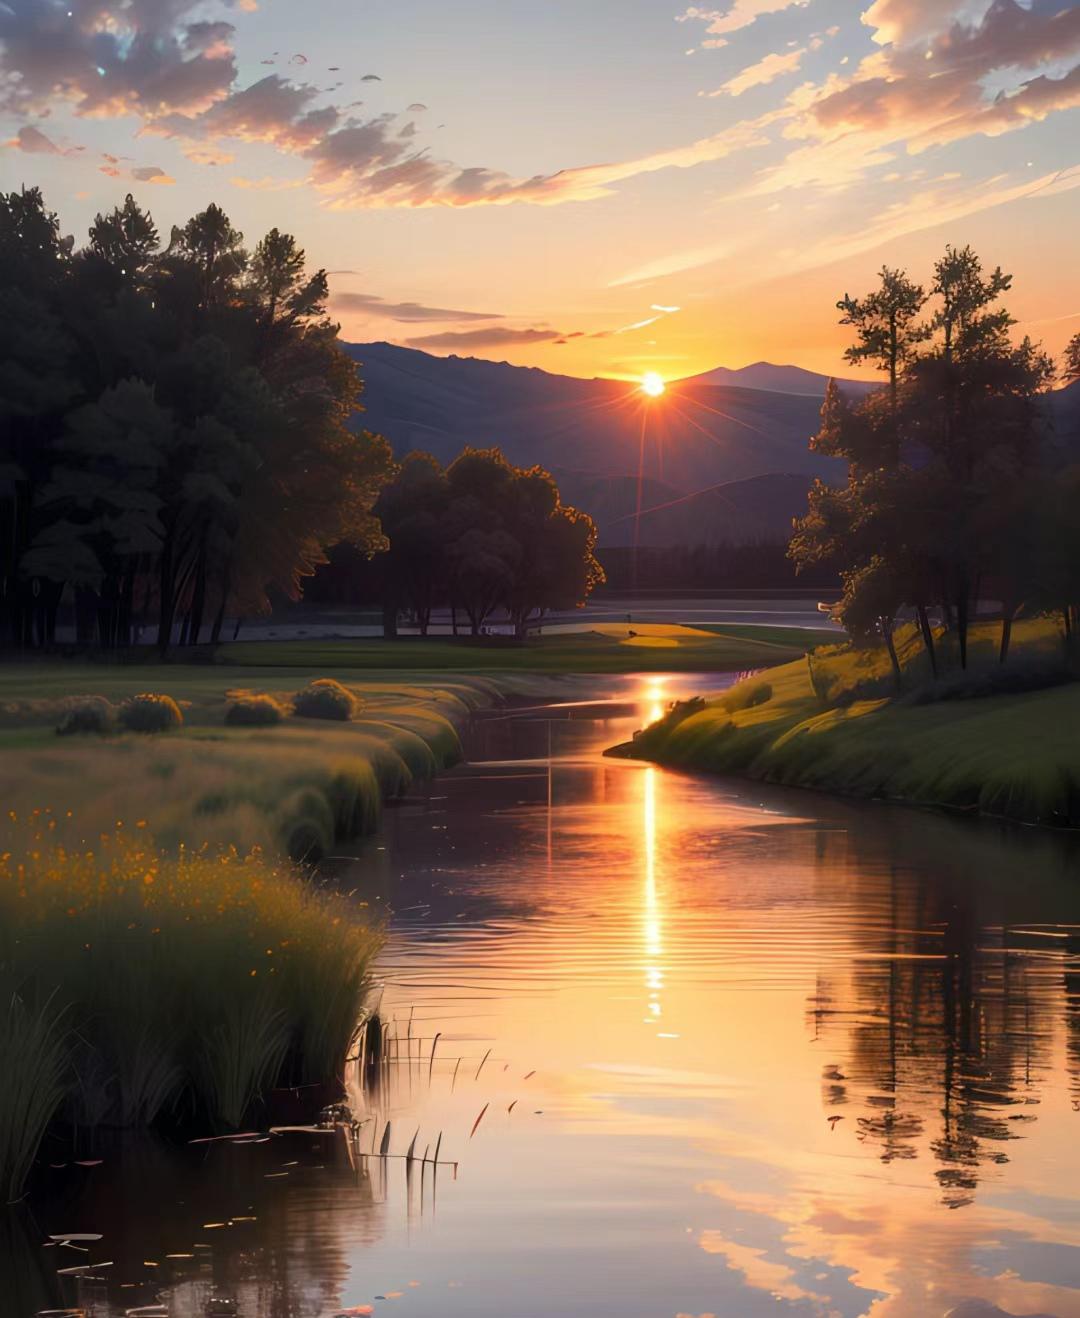 夕阳西下,天水一色,湖边美景 这是一个平静而美丽的夏日晚上,在湖面上